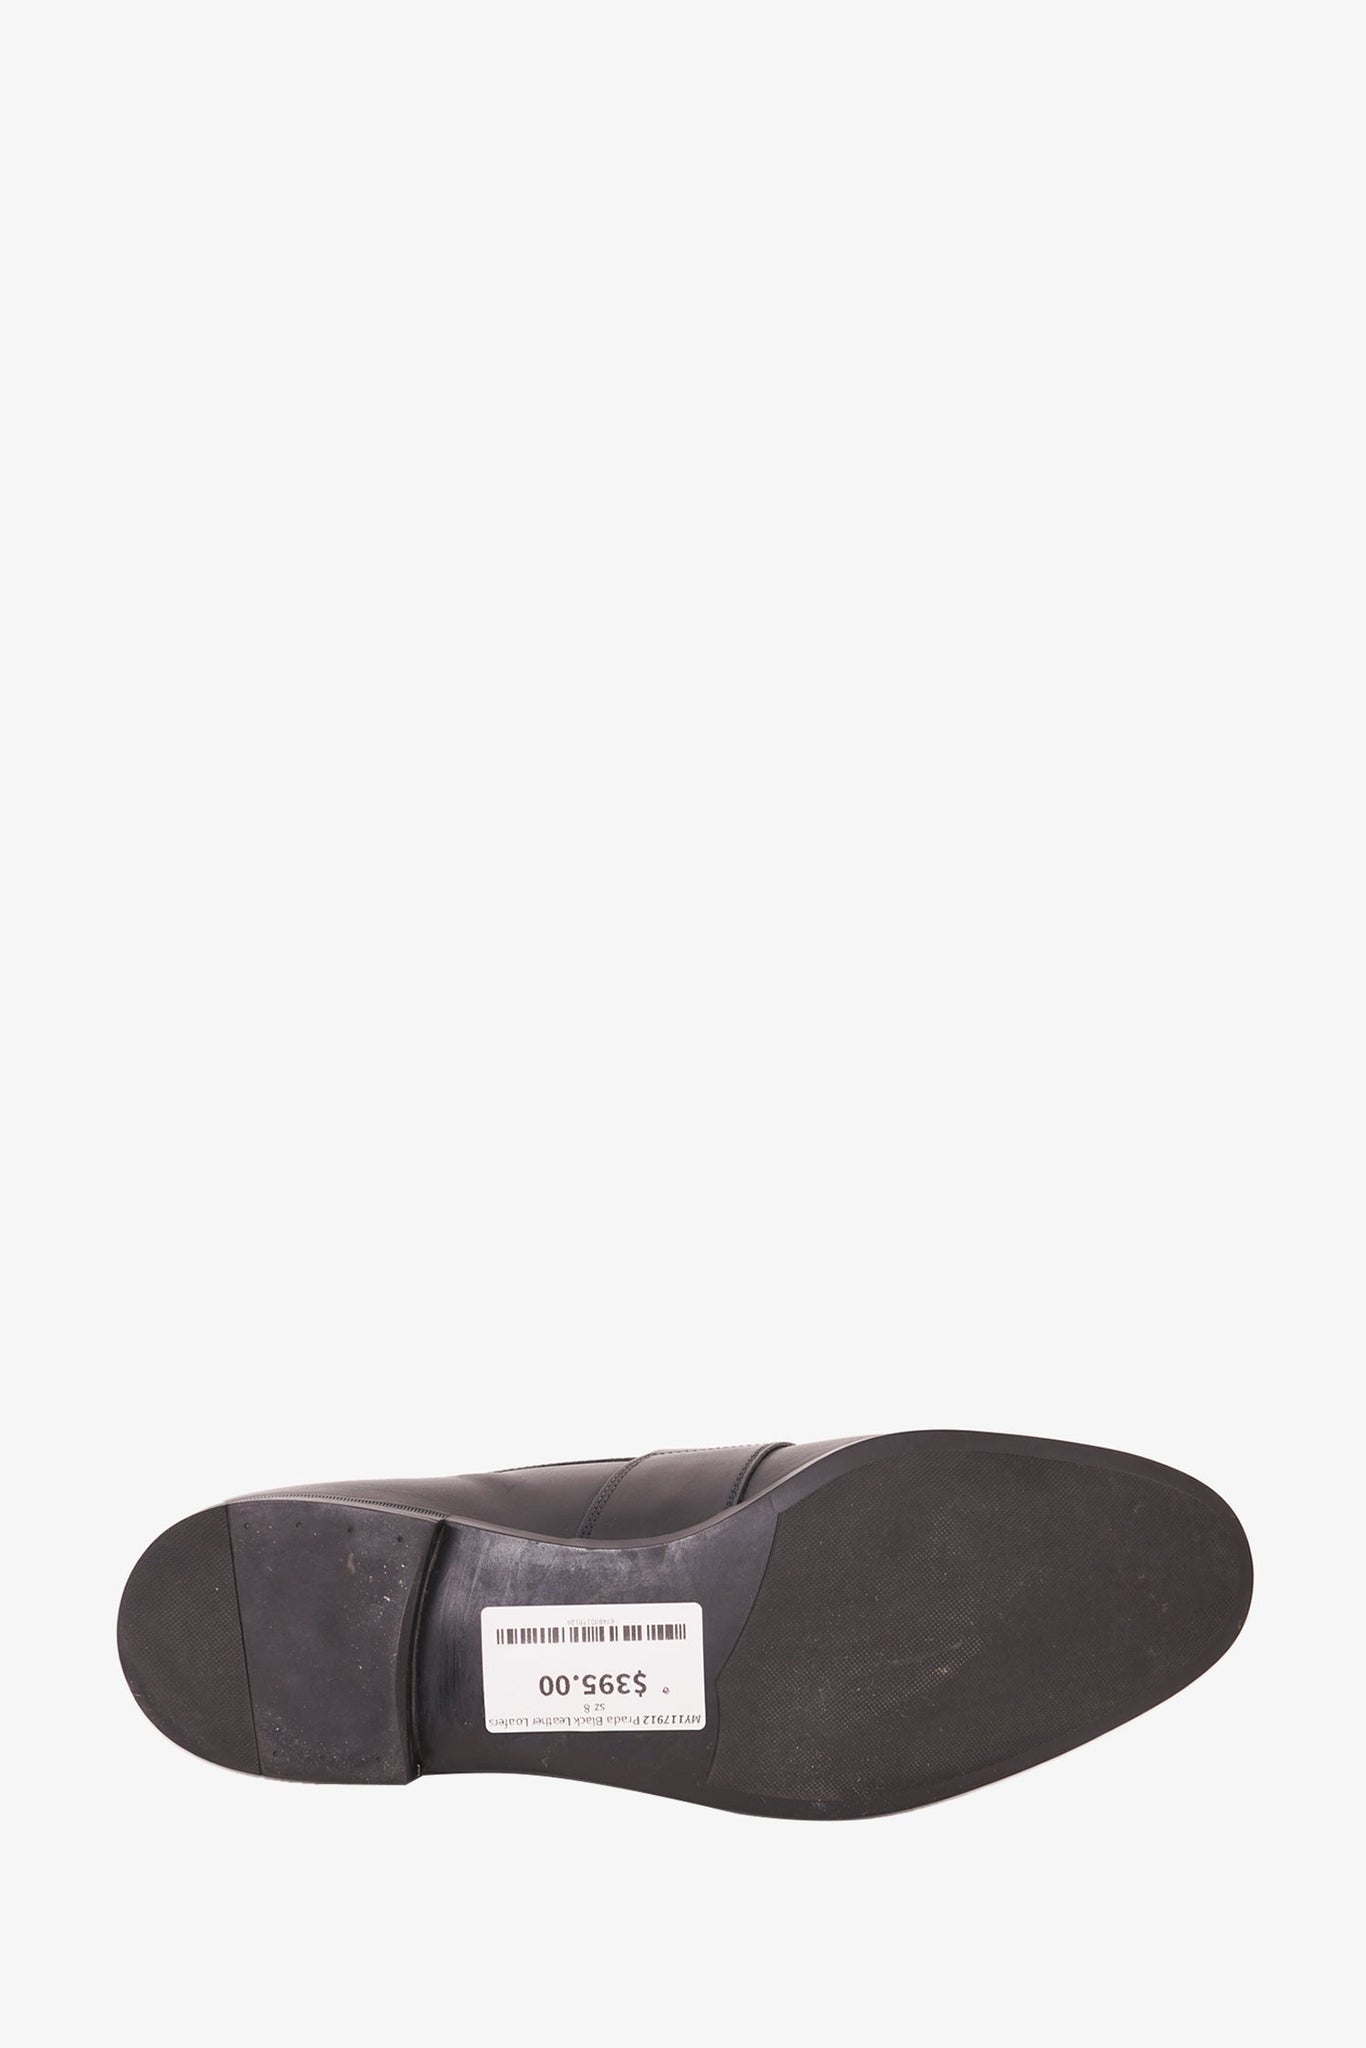 Prada Black Leather Loafers  sz 8